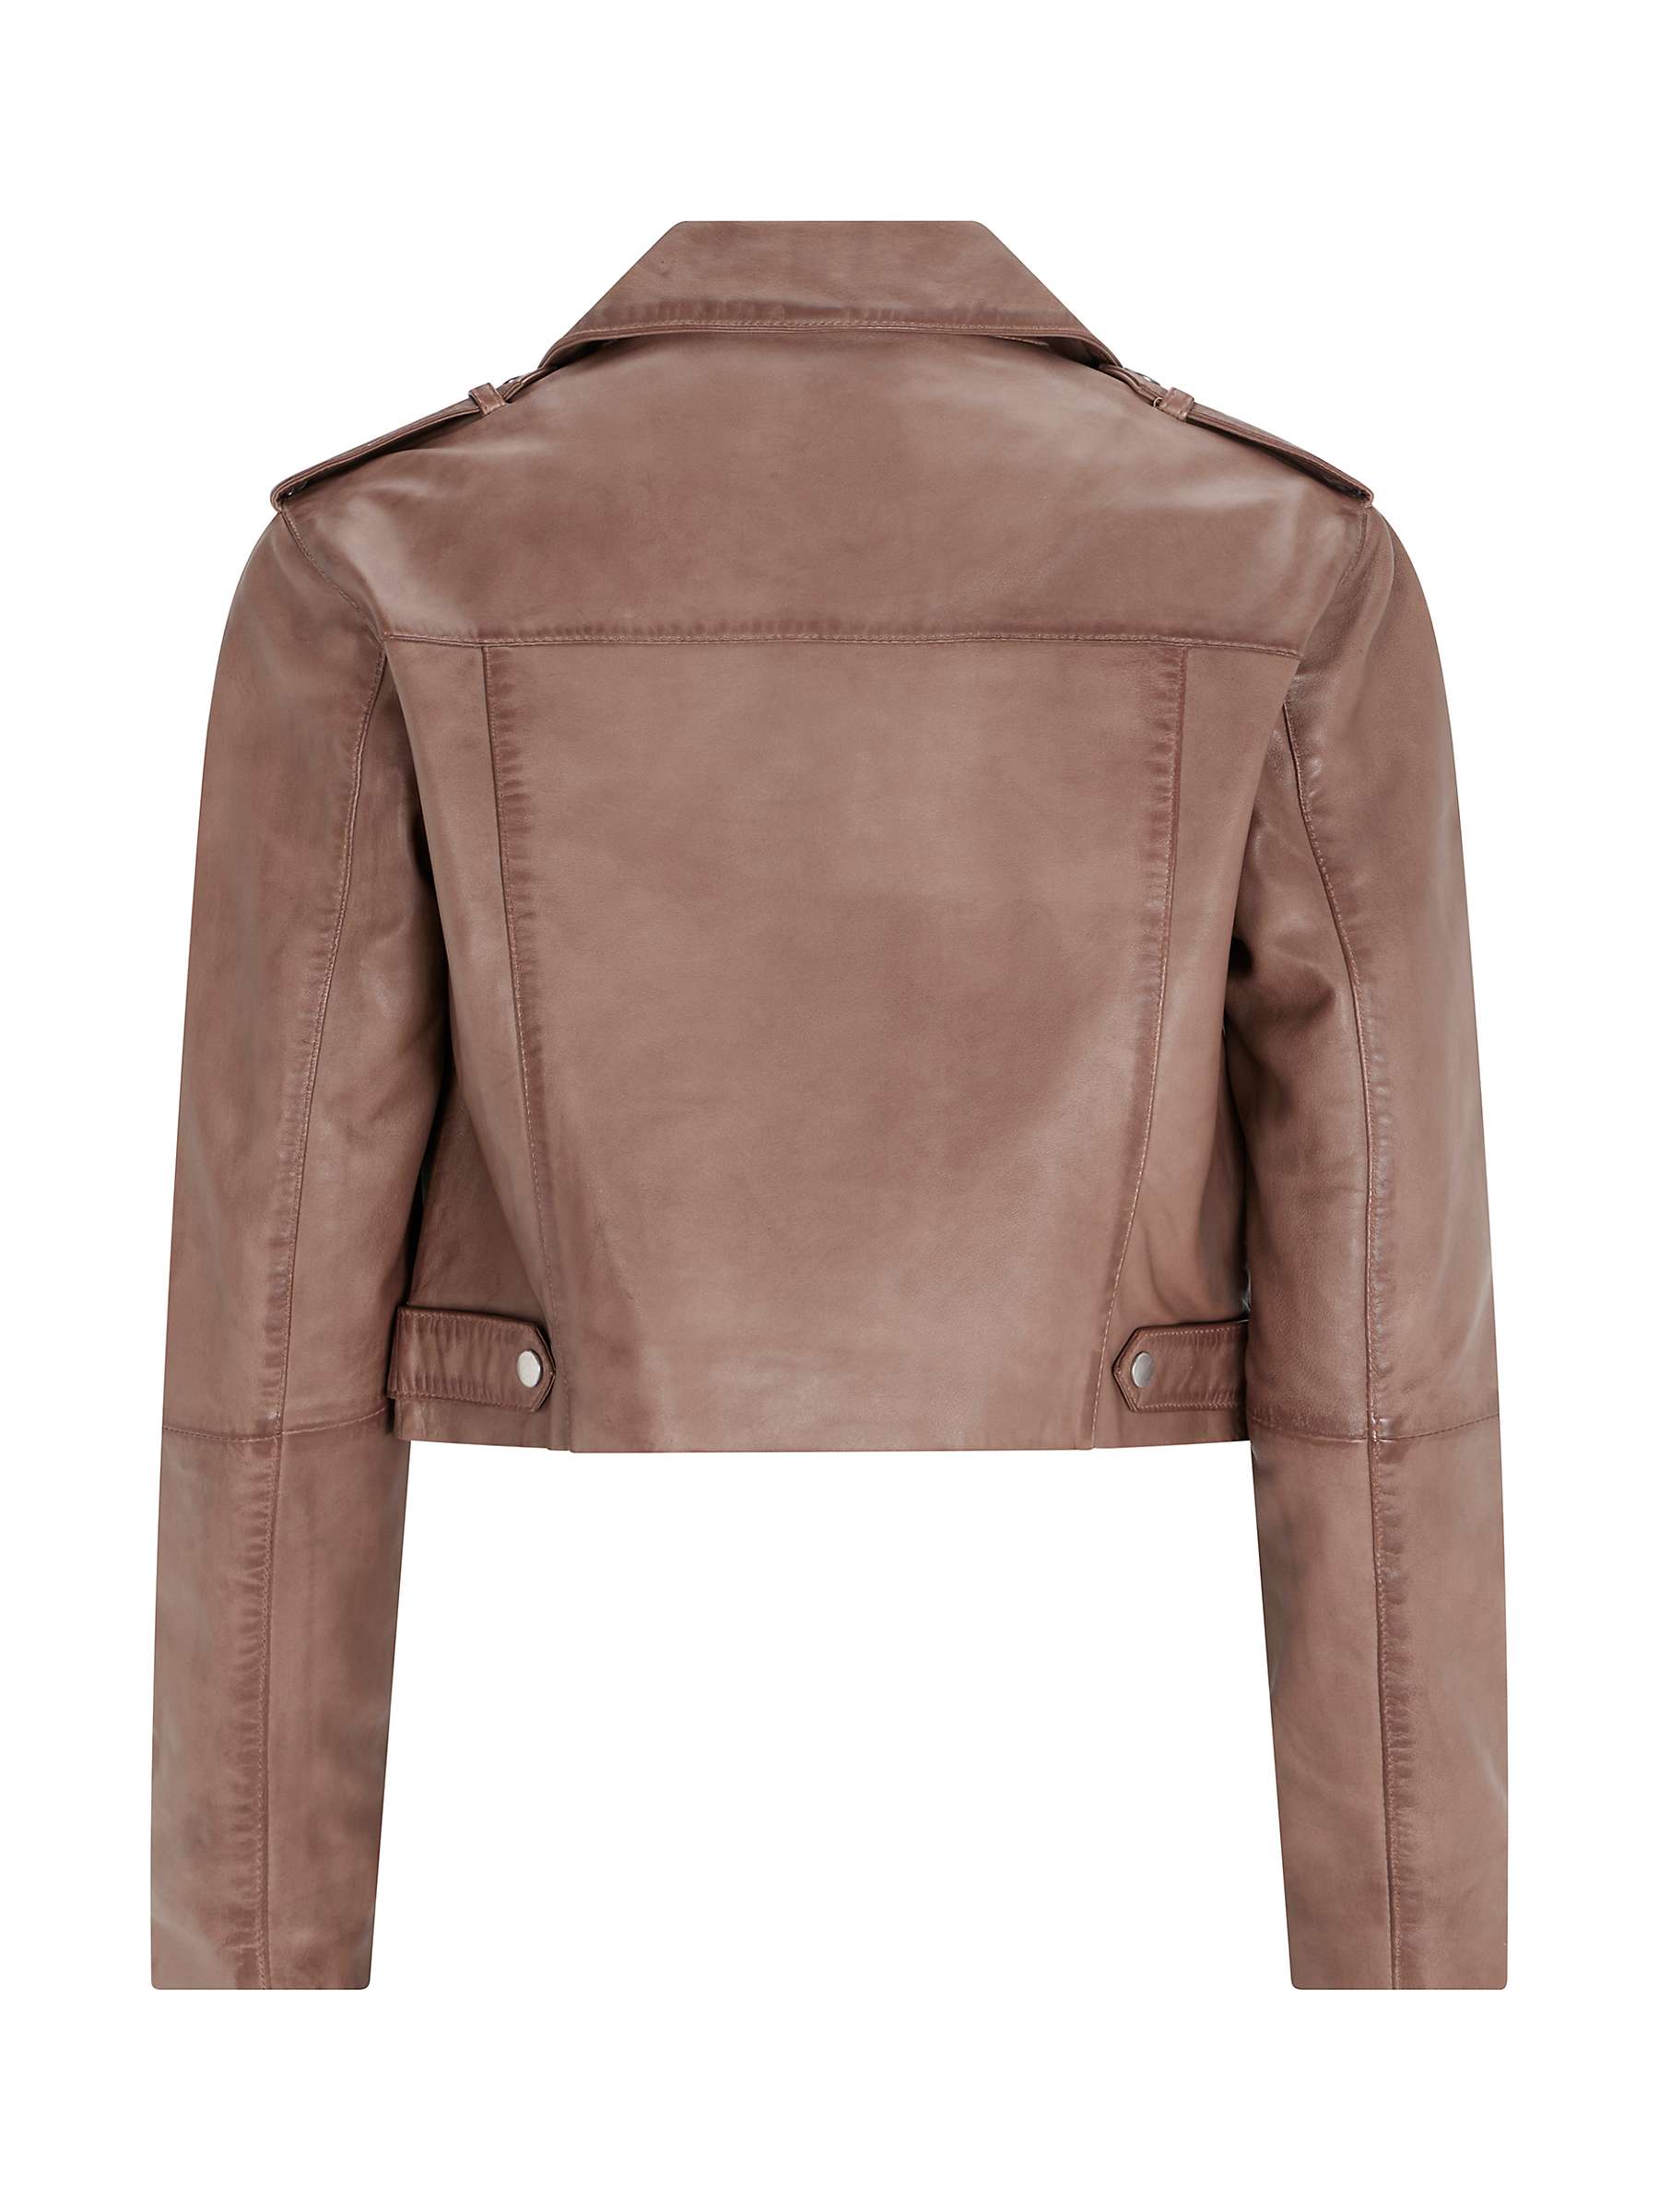 Buy Mint Velvet Leather Biker Jacket, Brown/Multi Online at johnlewis.com